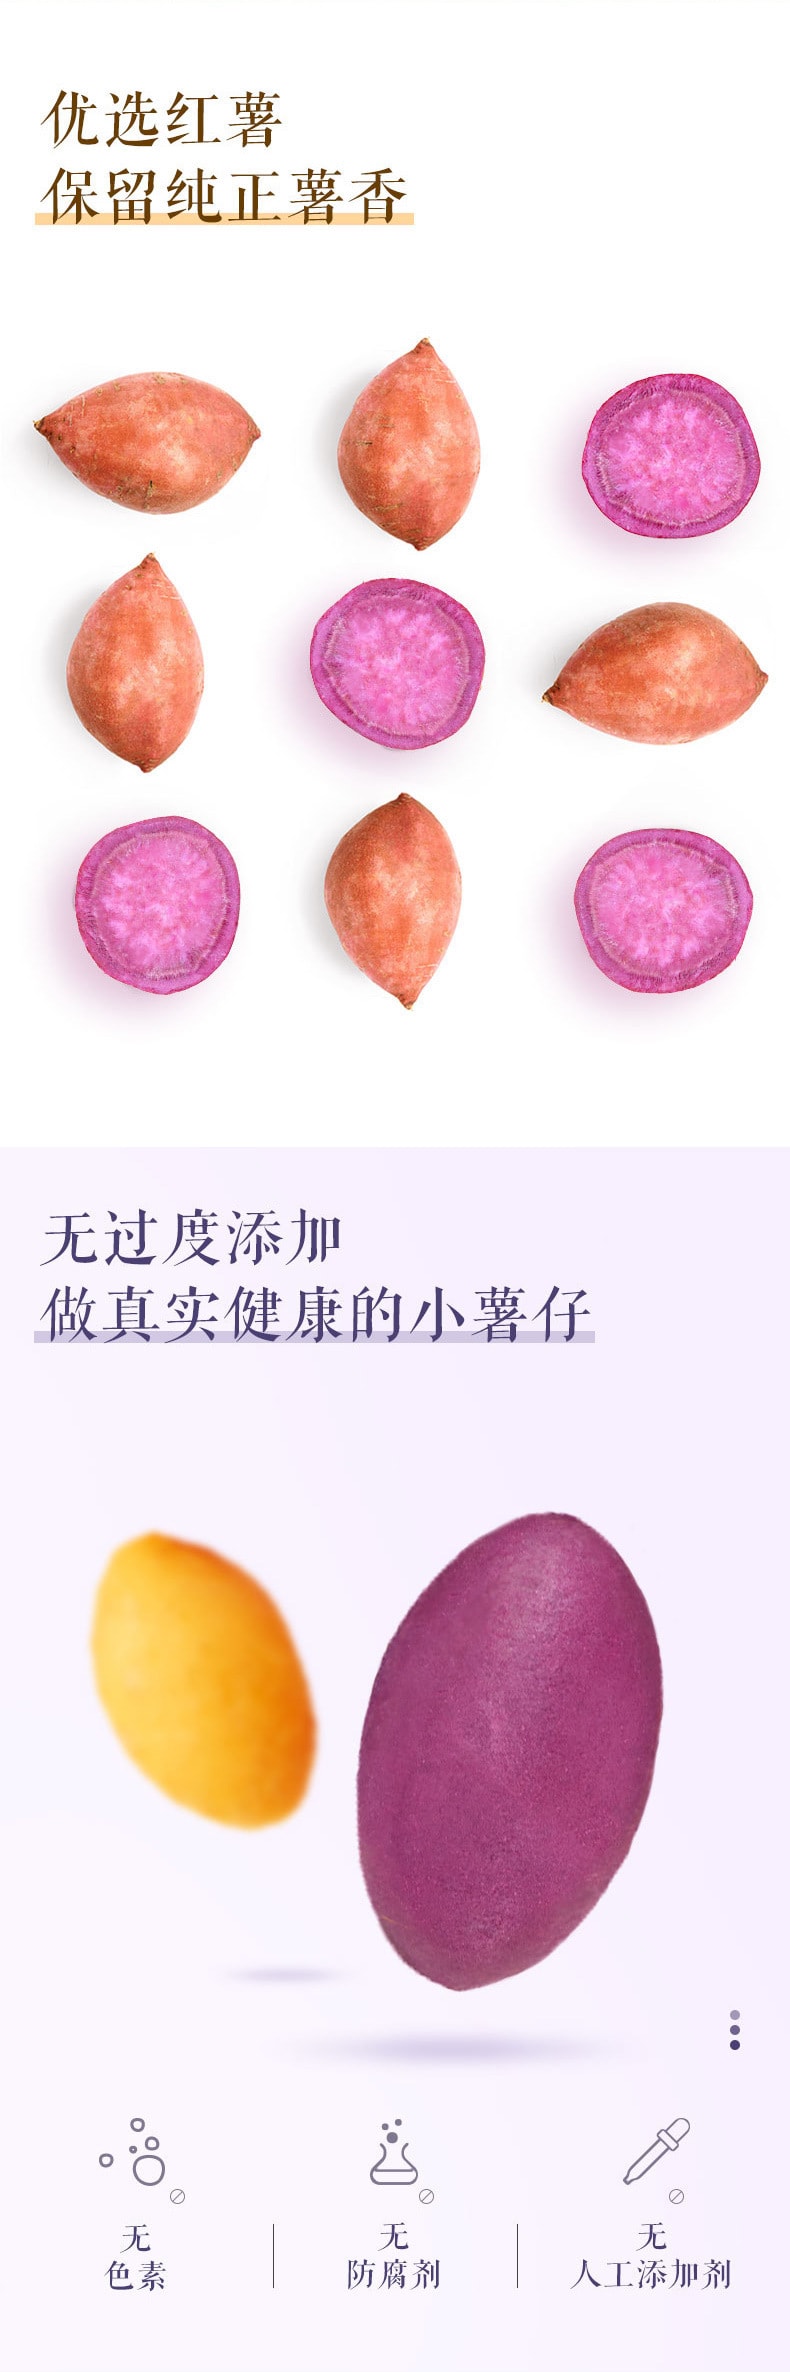 【中国直邮】三只松鼠 紫薯仔 零食小吃特产紫薯干地瓜干番薯健康粗粮 100g/袋